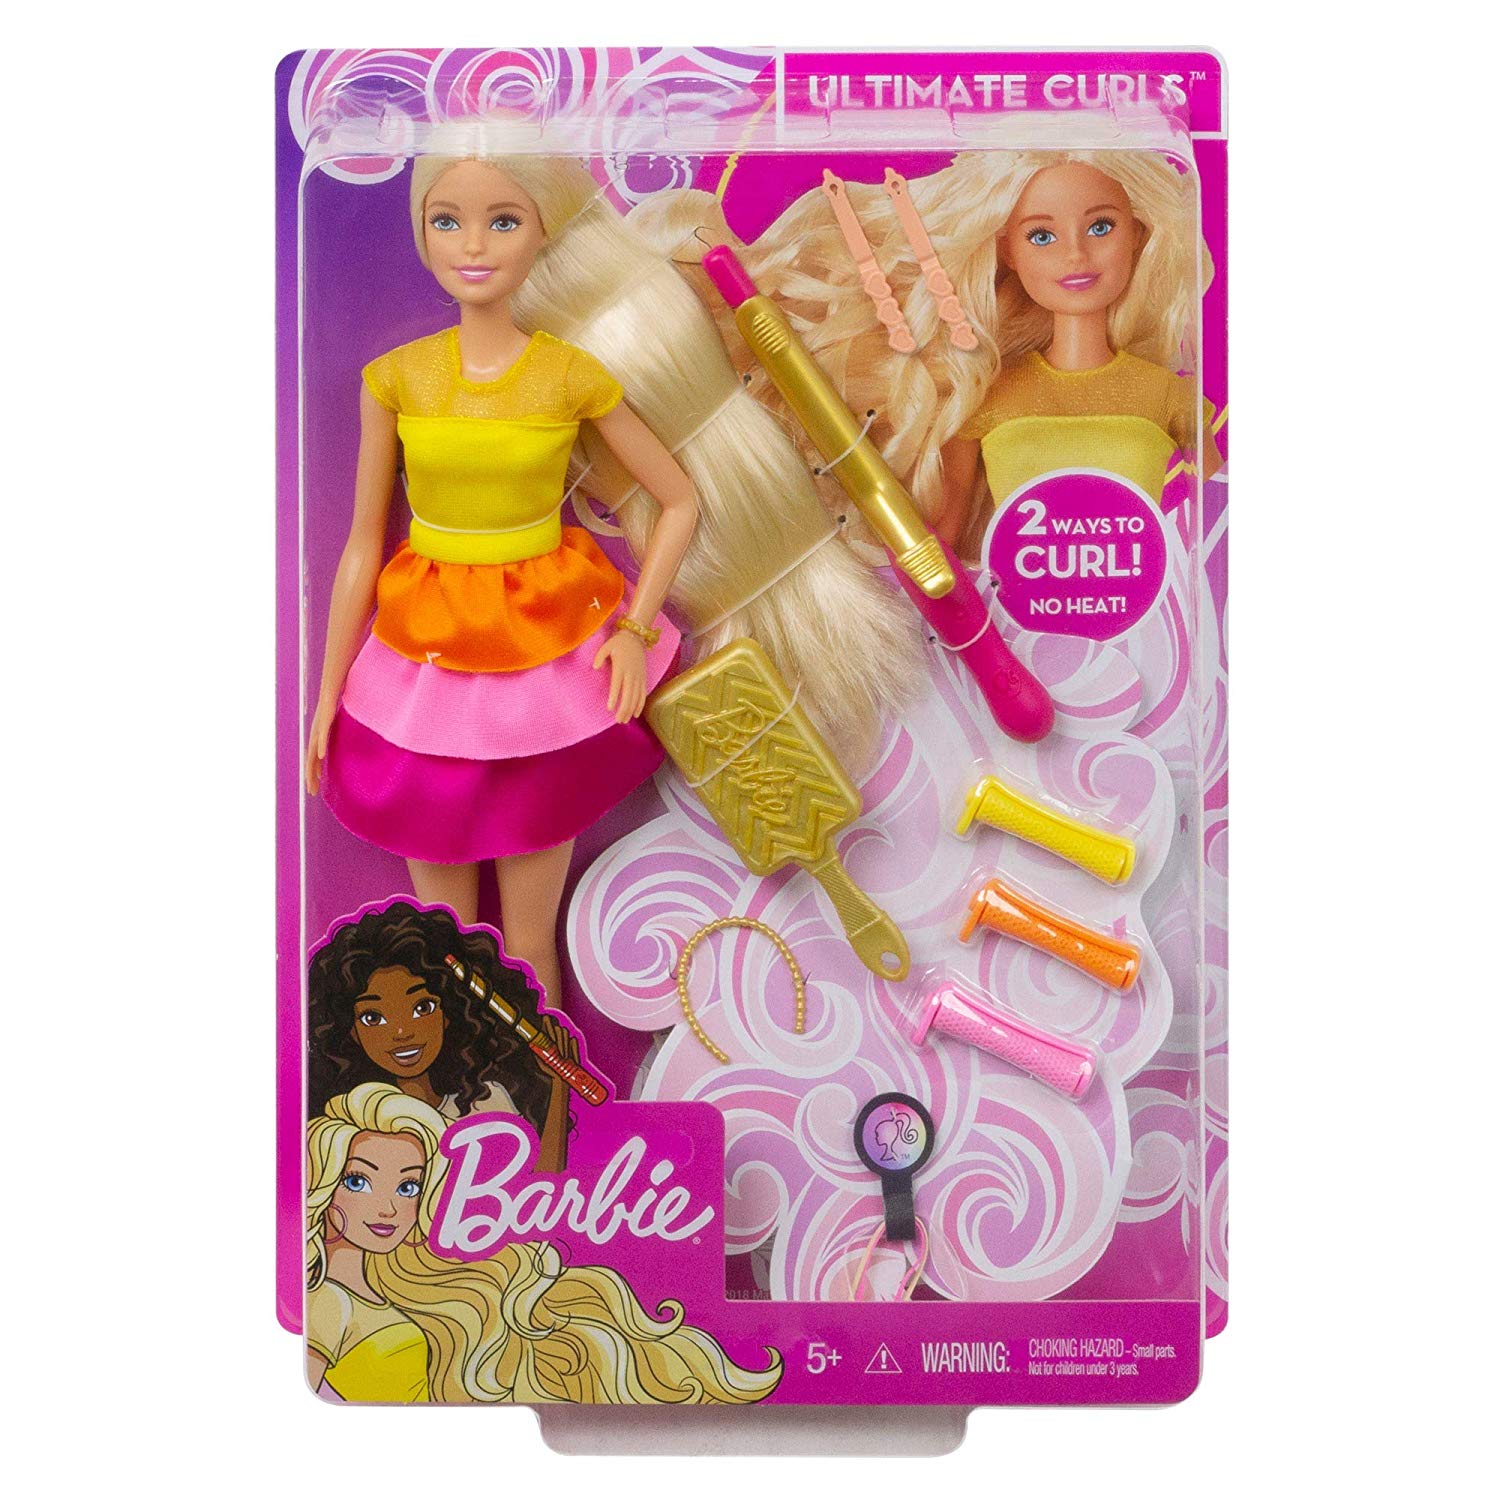 Barbie Ricci Perfetti GBK24